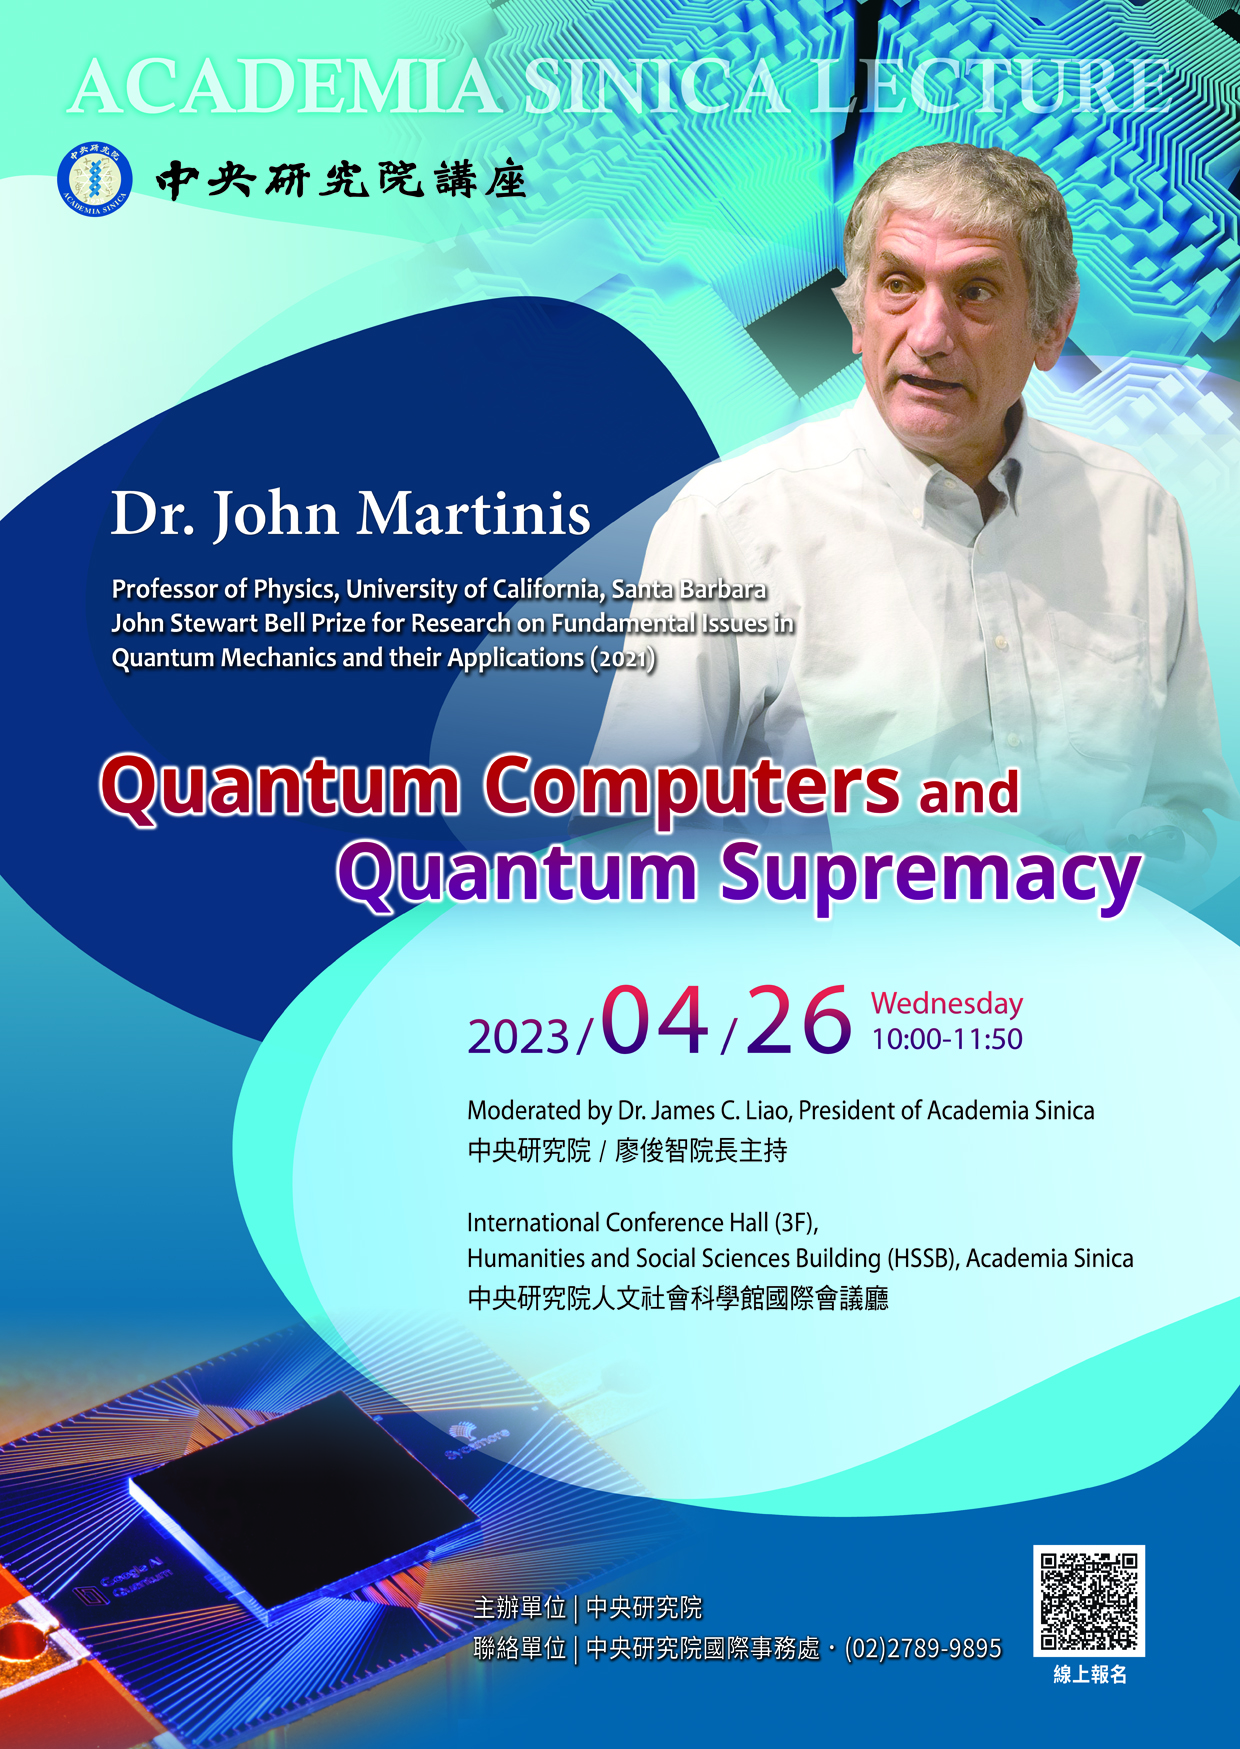 Dr. John Martinis